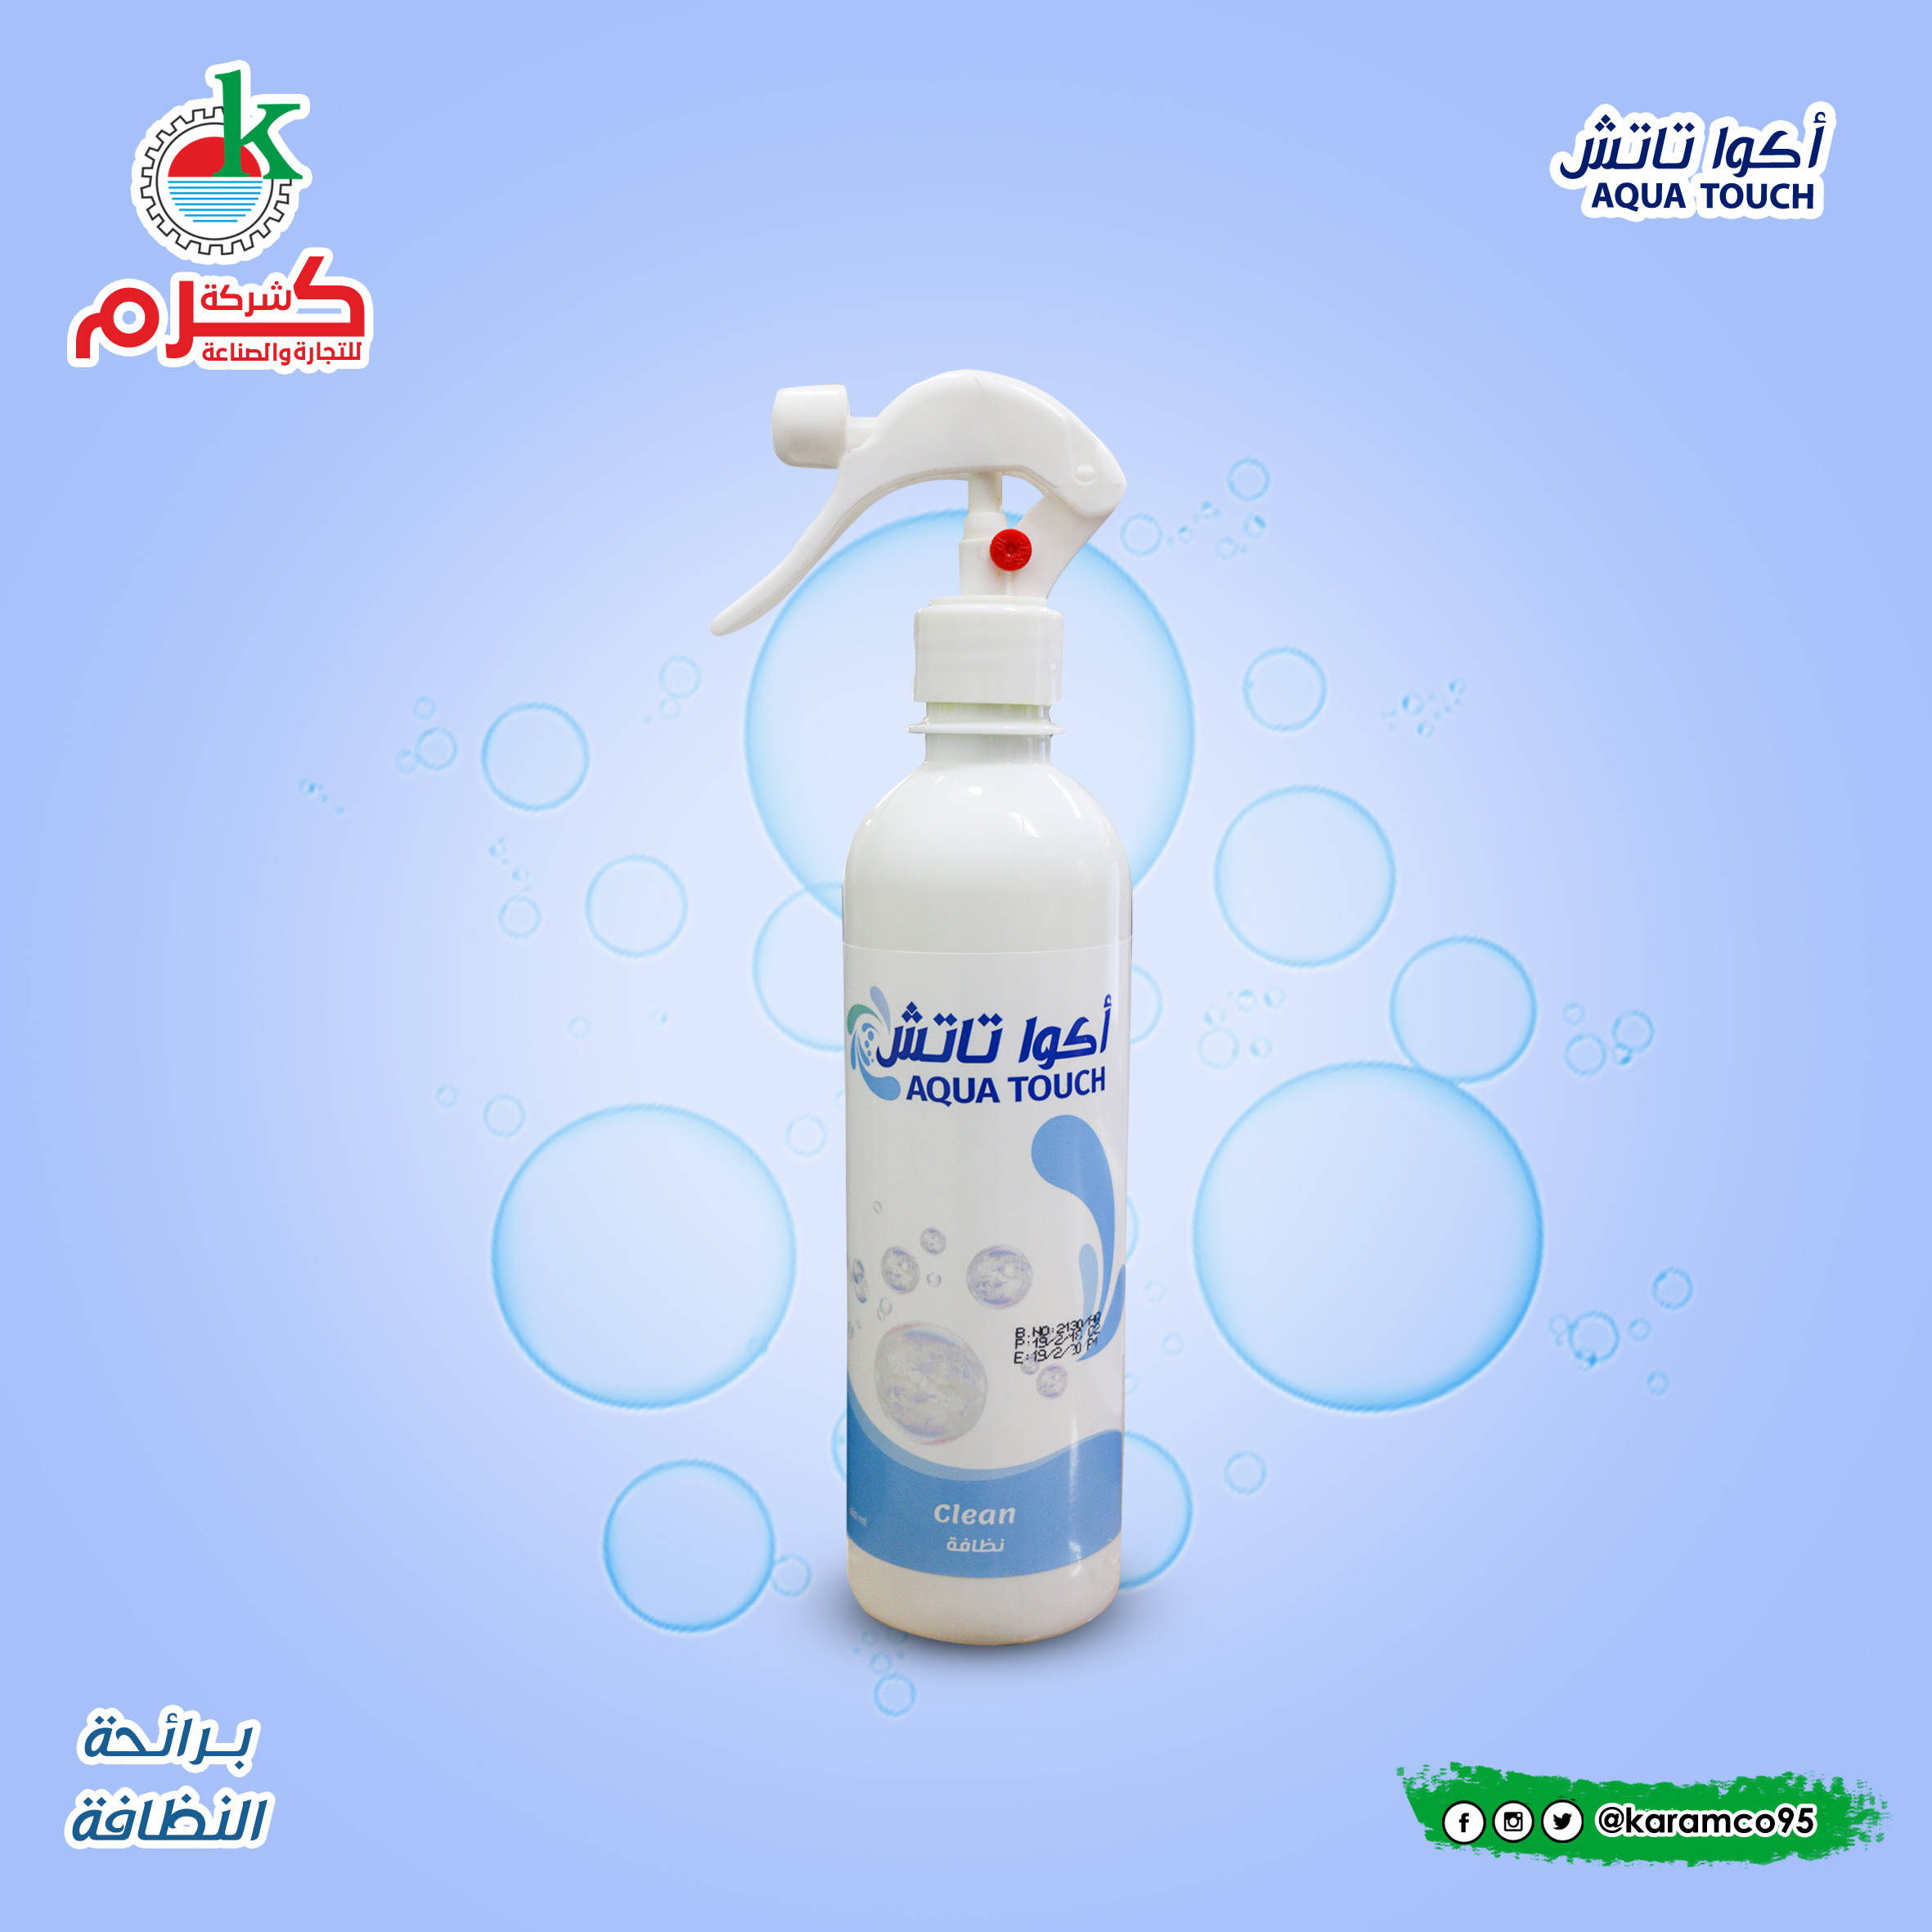 Aqua Touch Air Freshener Clean